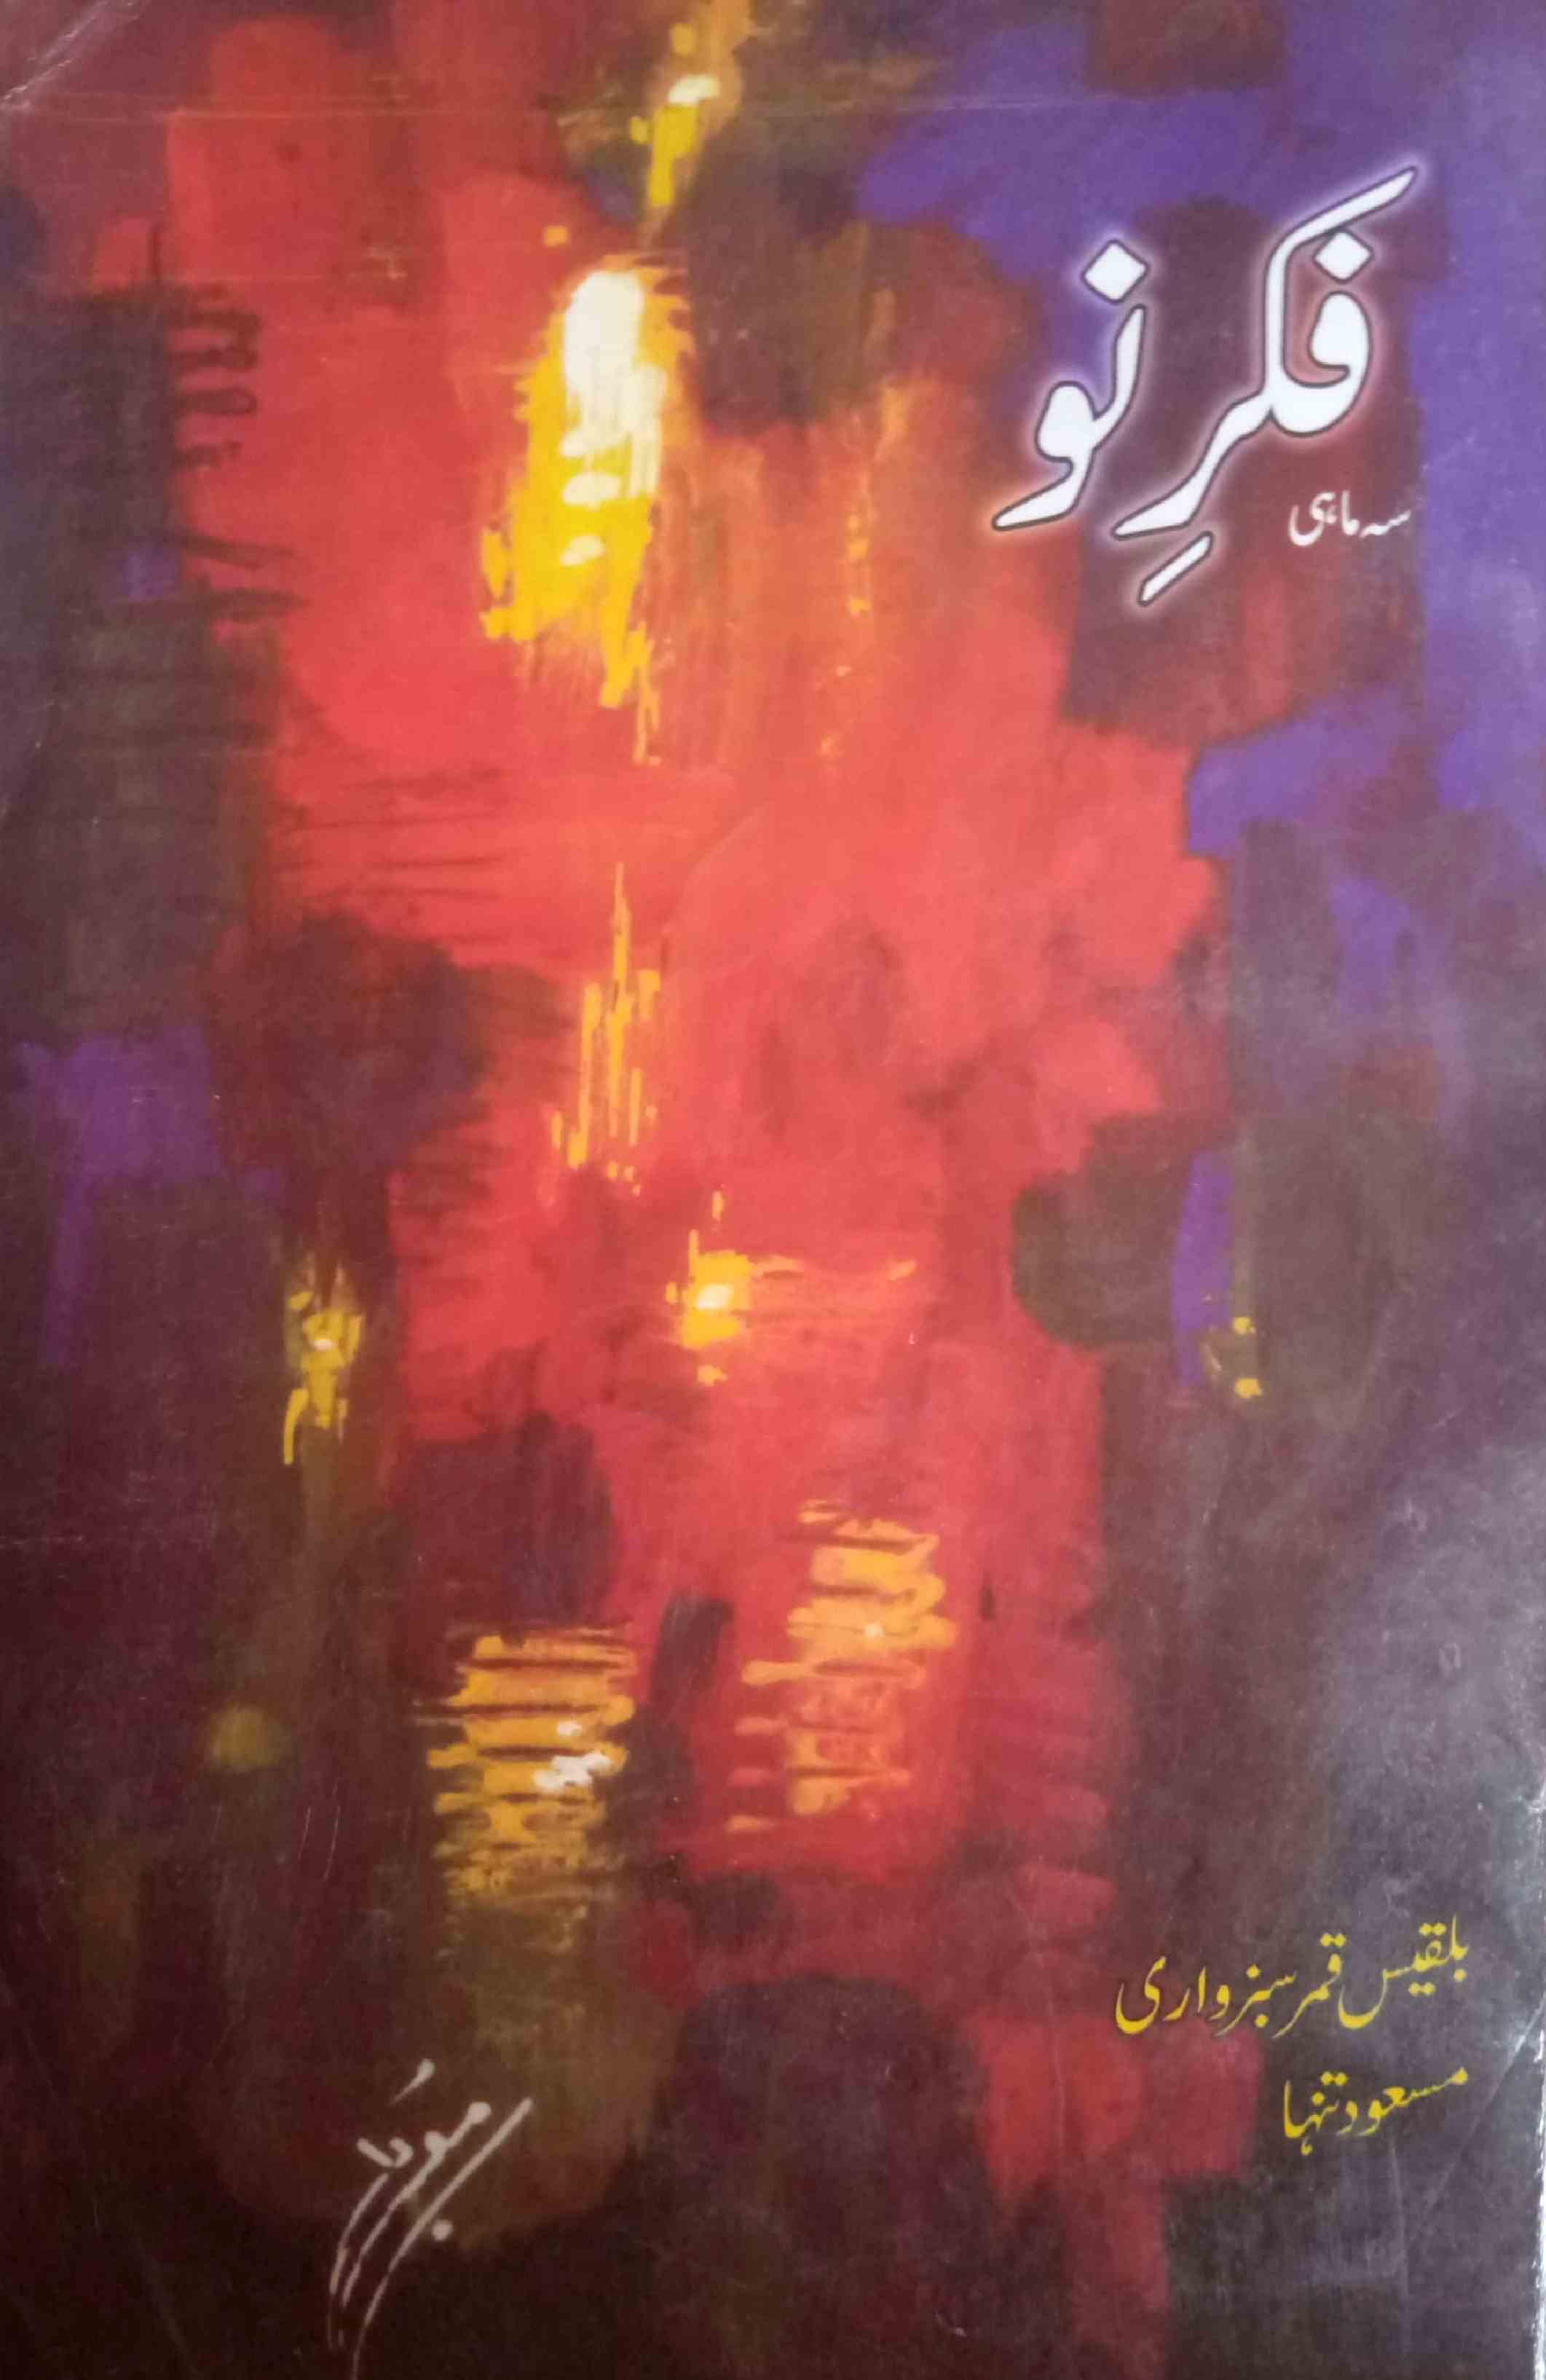 फ़िक्र-ए-नौ, लाहौर- Magazine by अननोन आर्गेनाइजेशन, इल्म-ओ-इरफ़ान पब्लिशर्स, लाहौर 